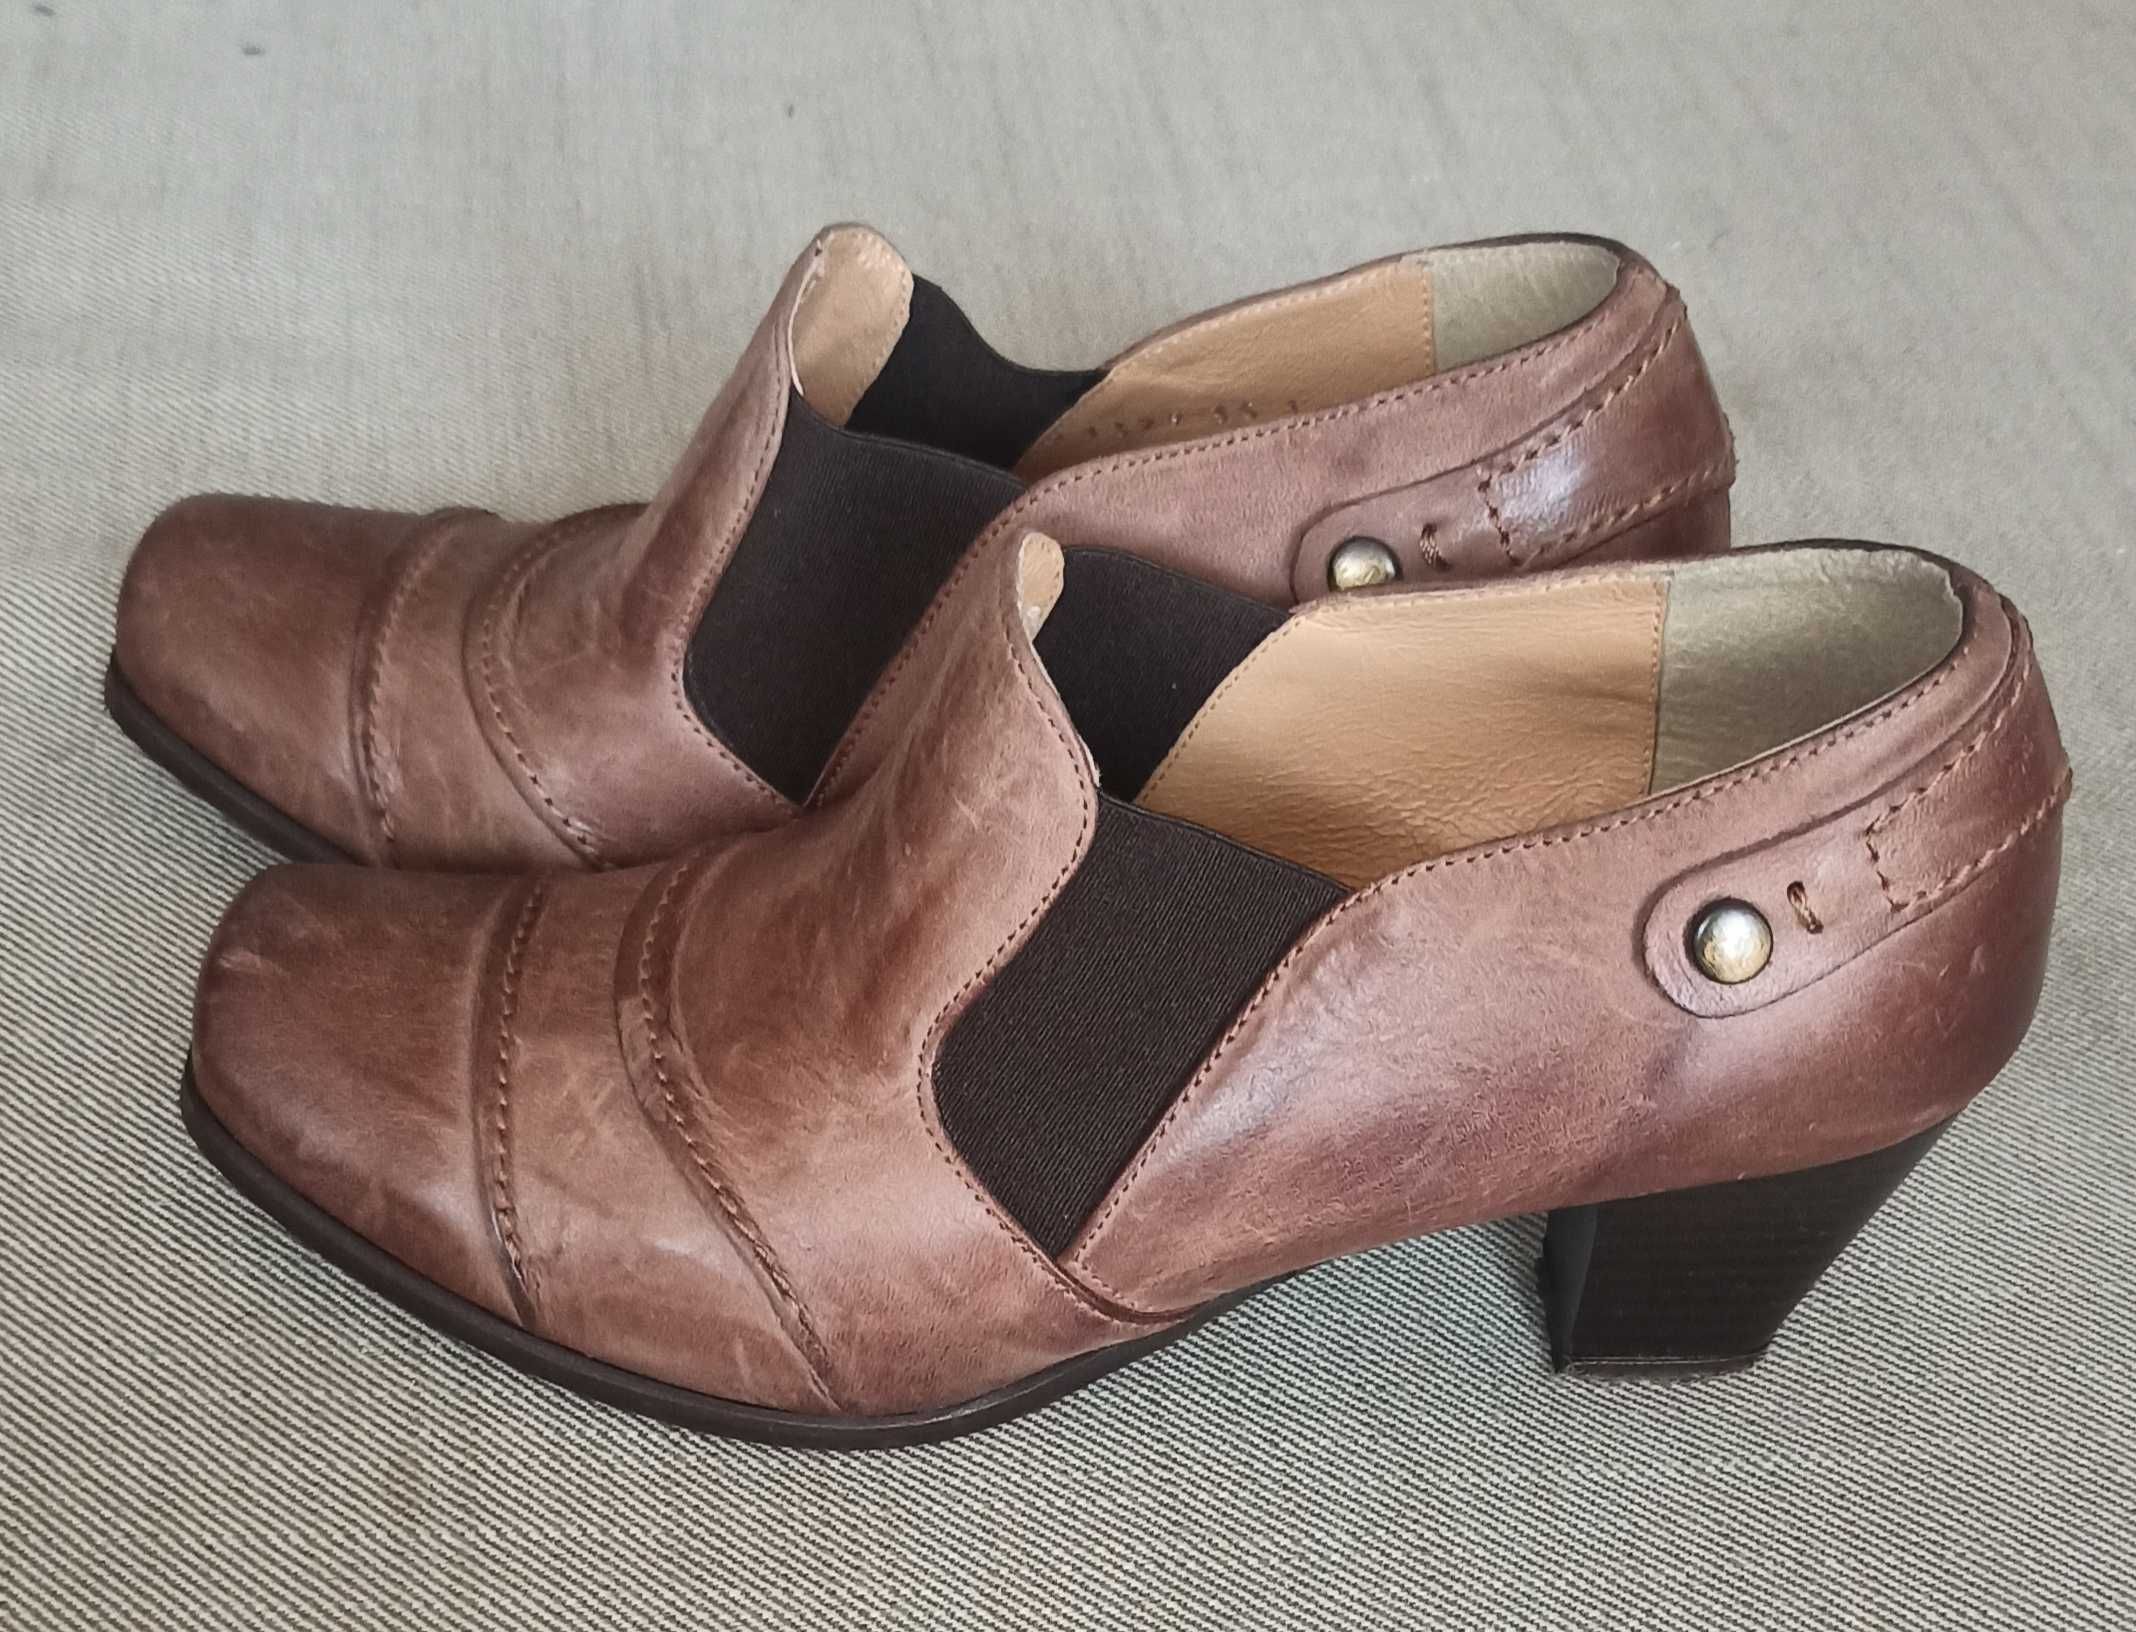 Włoskie buty skórzane Edeo rozmiar 35